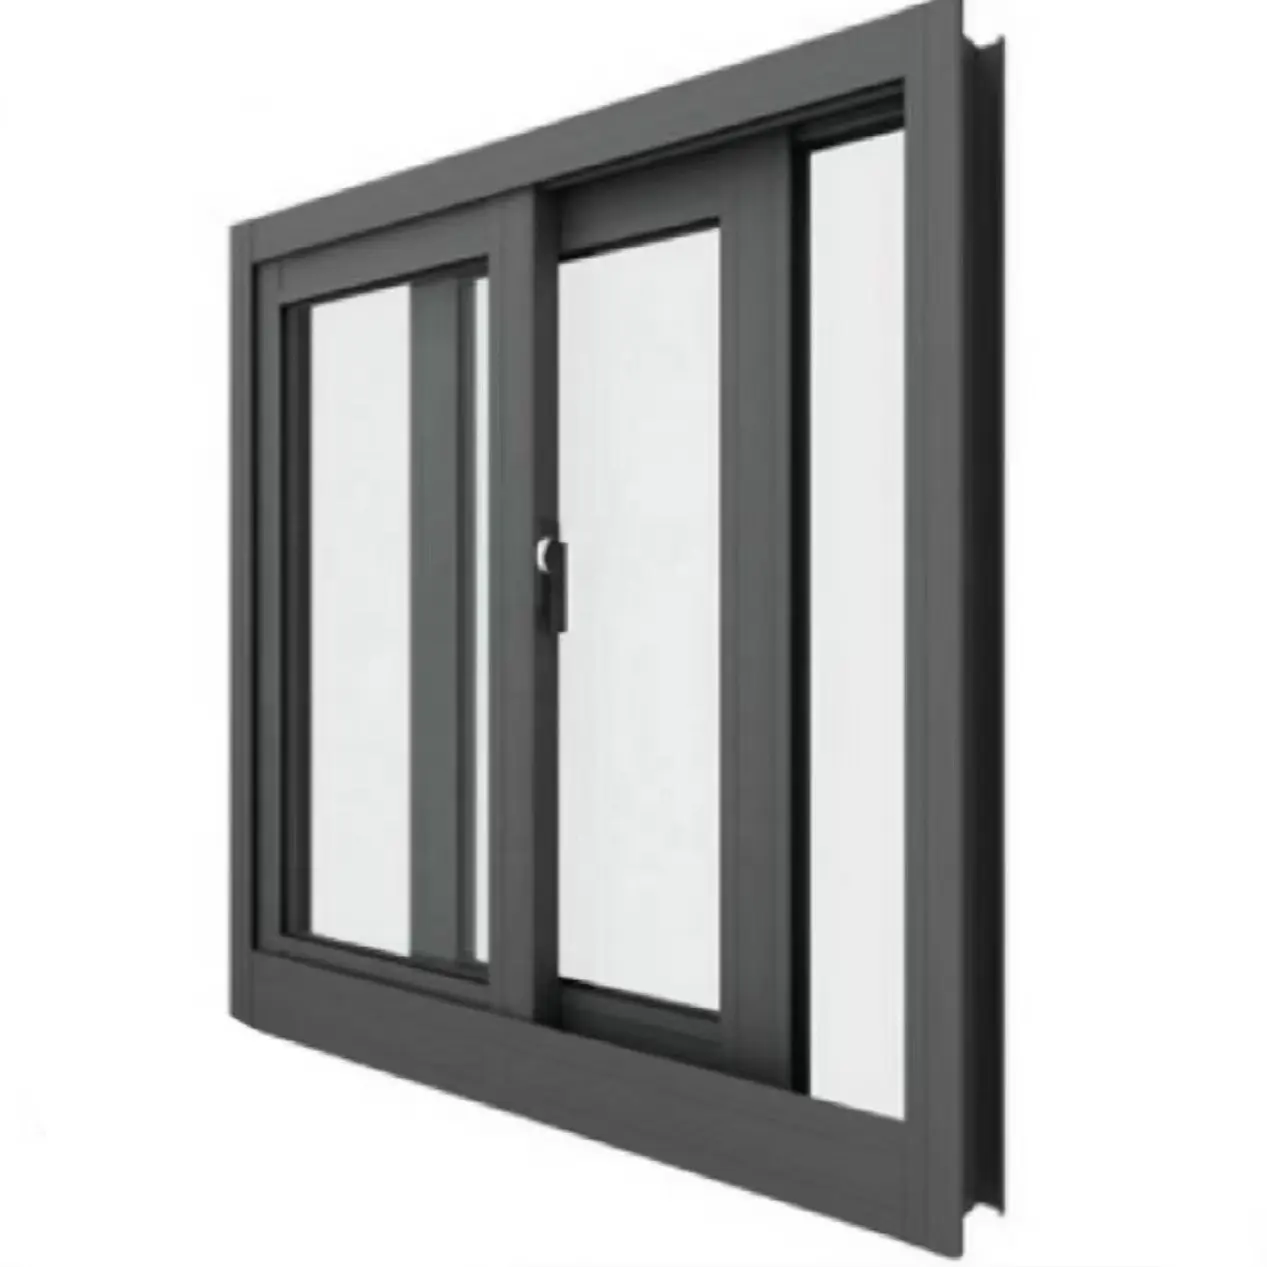 Perfil de alumínio para janelas e portas, perfil de alumínio para janelas deslizantes verticais, produto importado da China para a Bolívia, preto